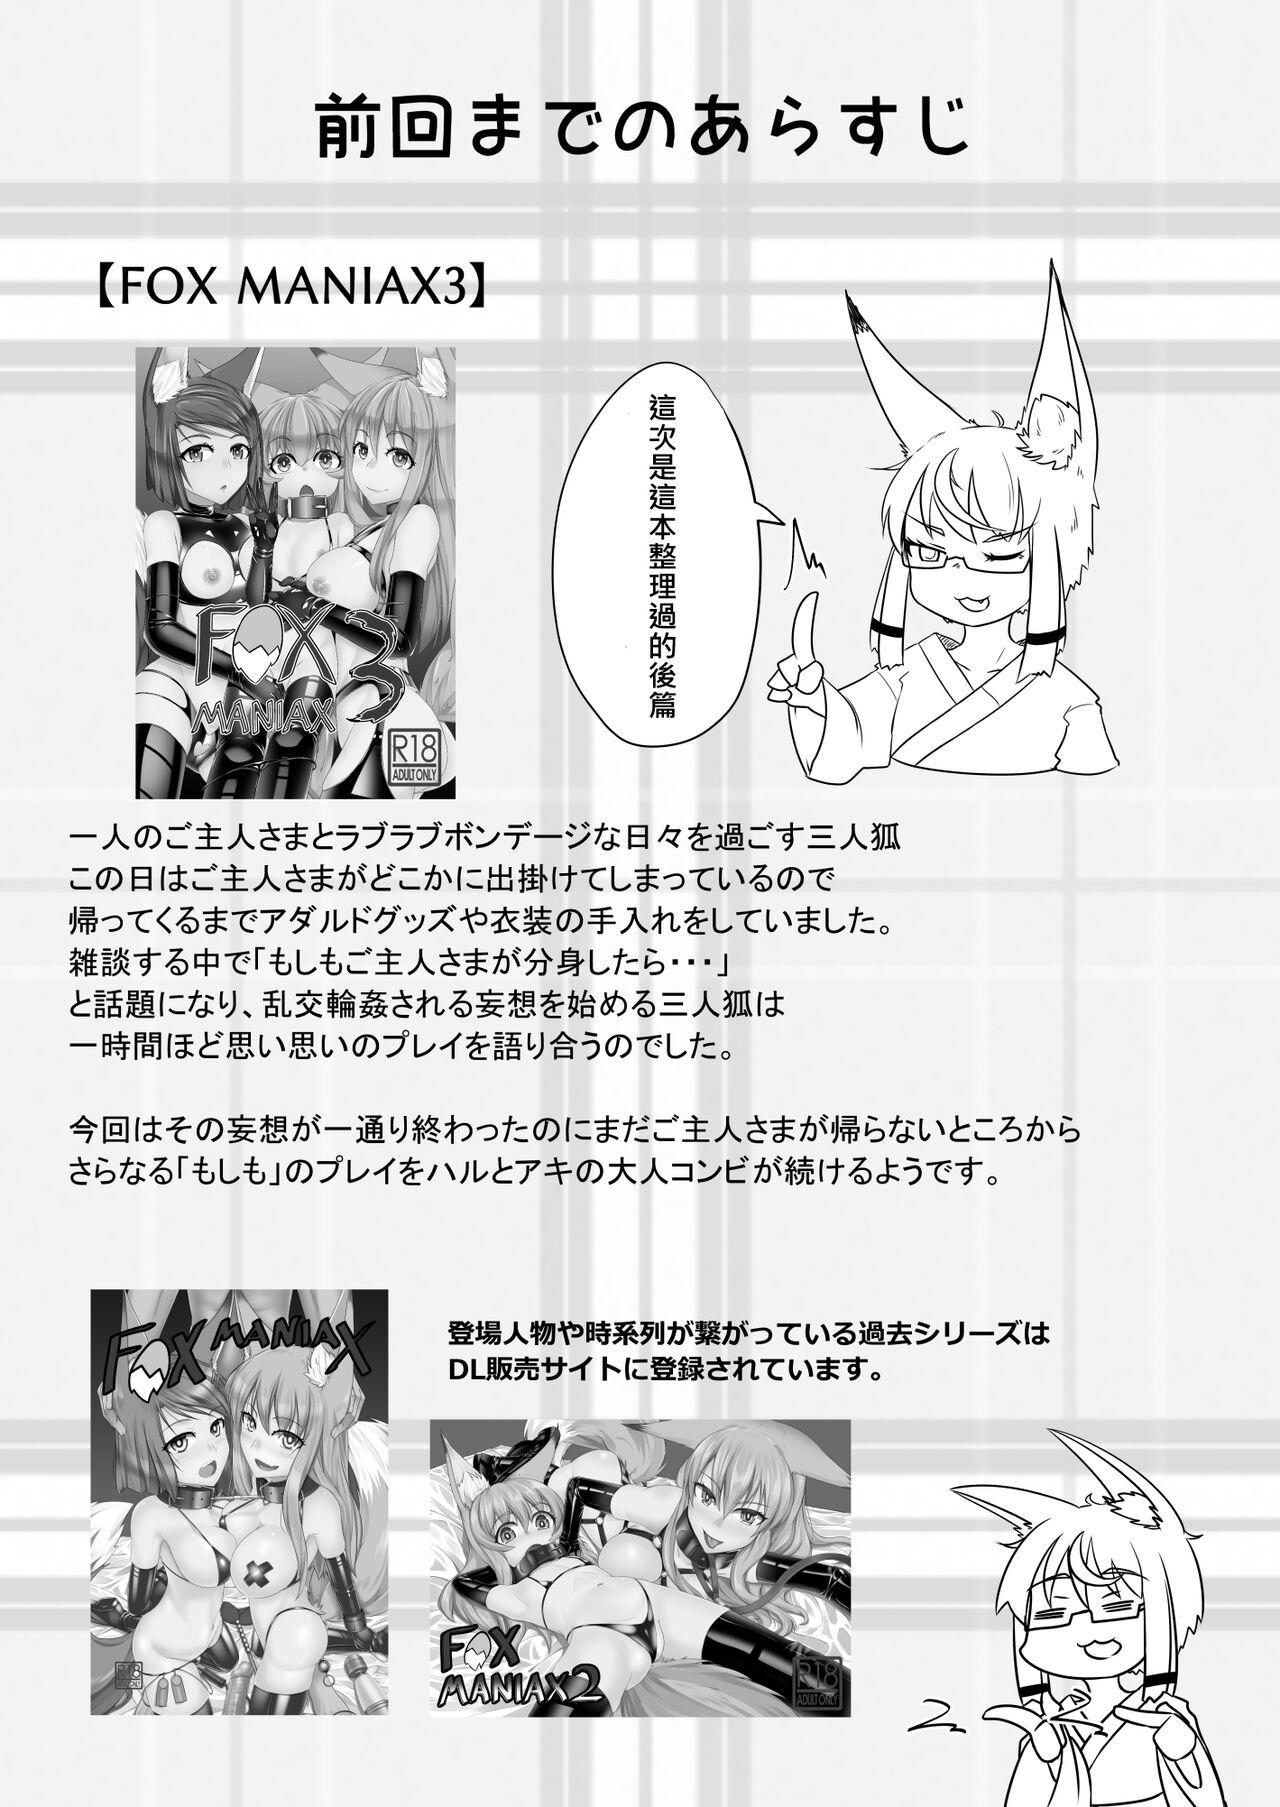 FOX MANIAX4 3